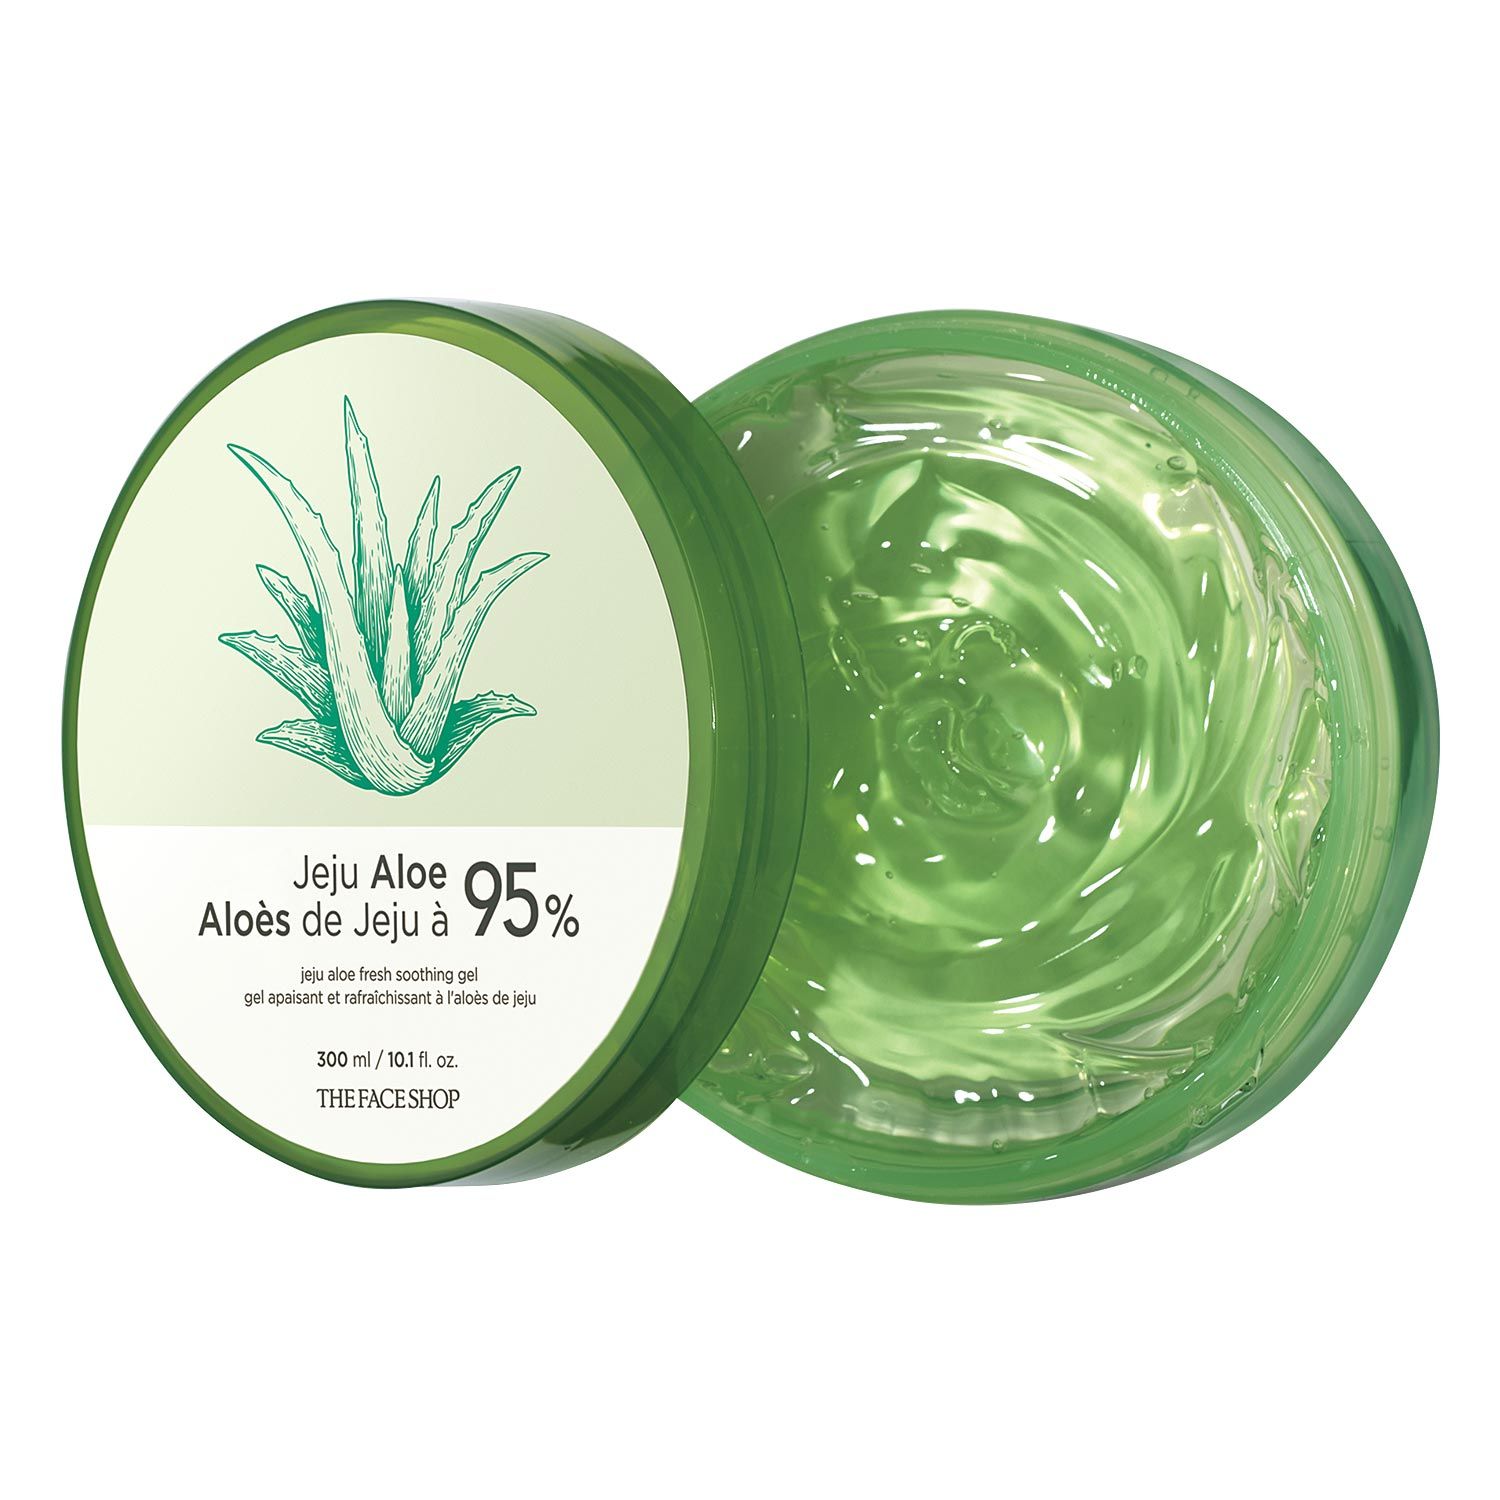 Prestatie acre diepvries Jeju Aloe 99% Fresh Soothing Gel by Avon